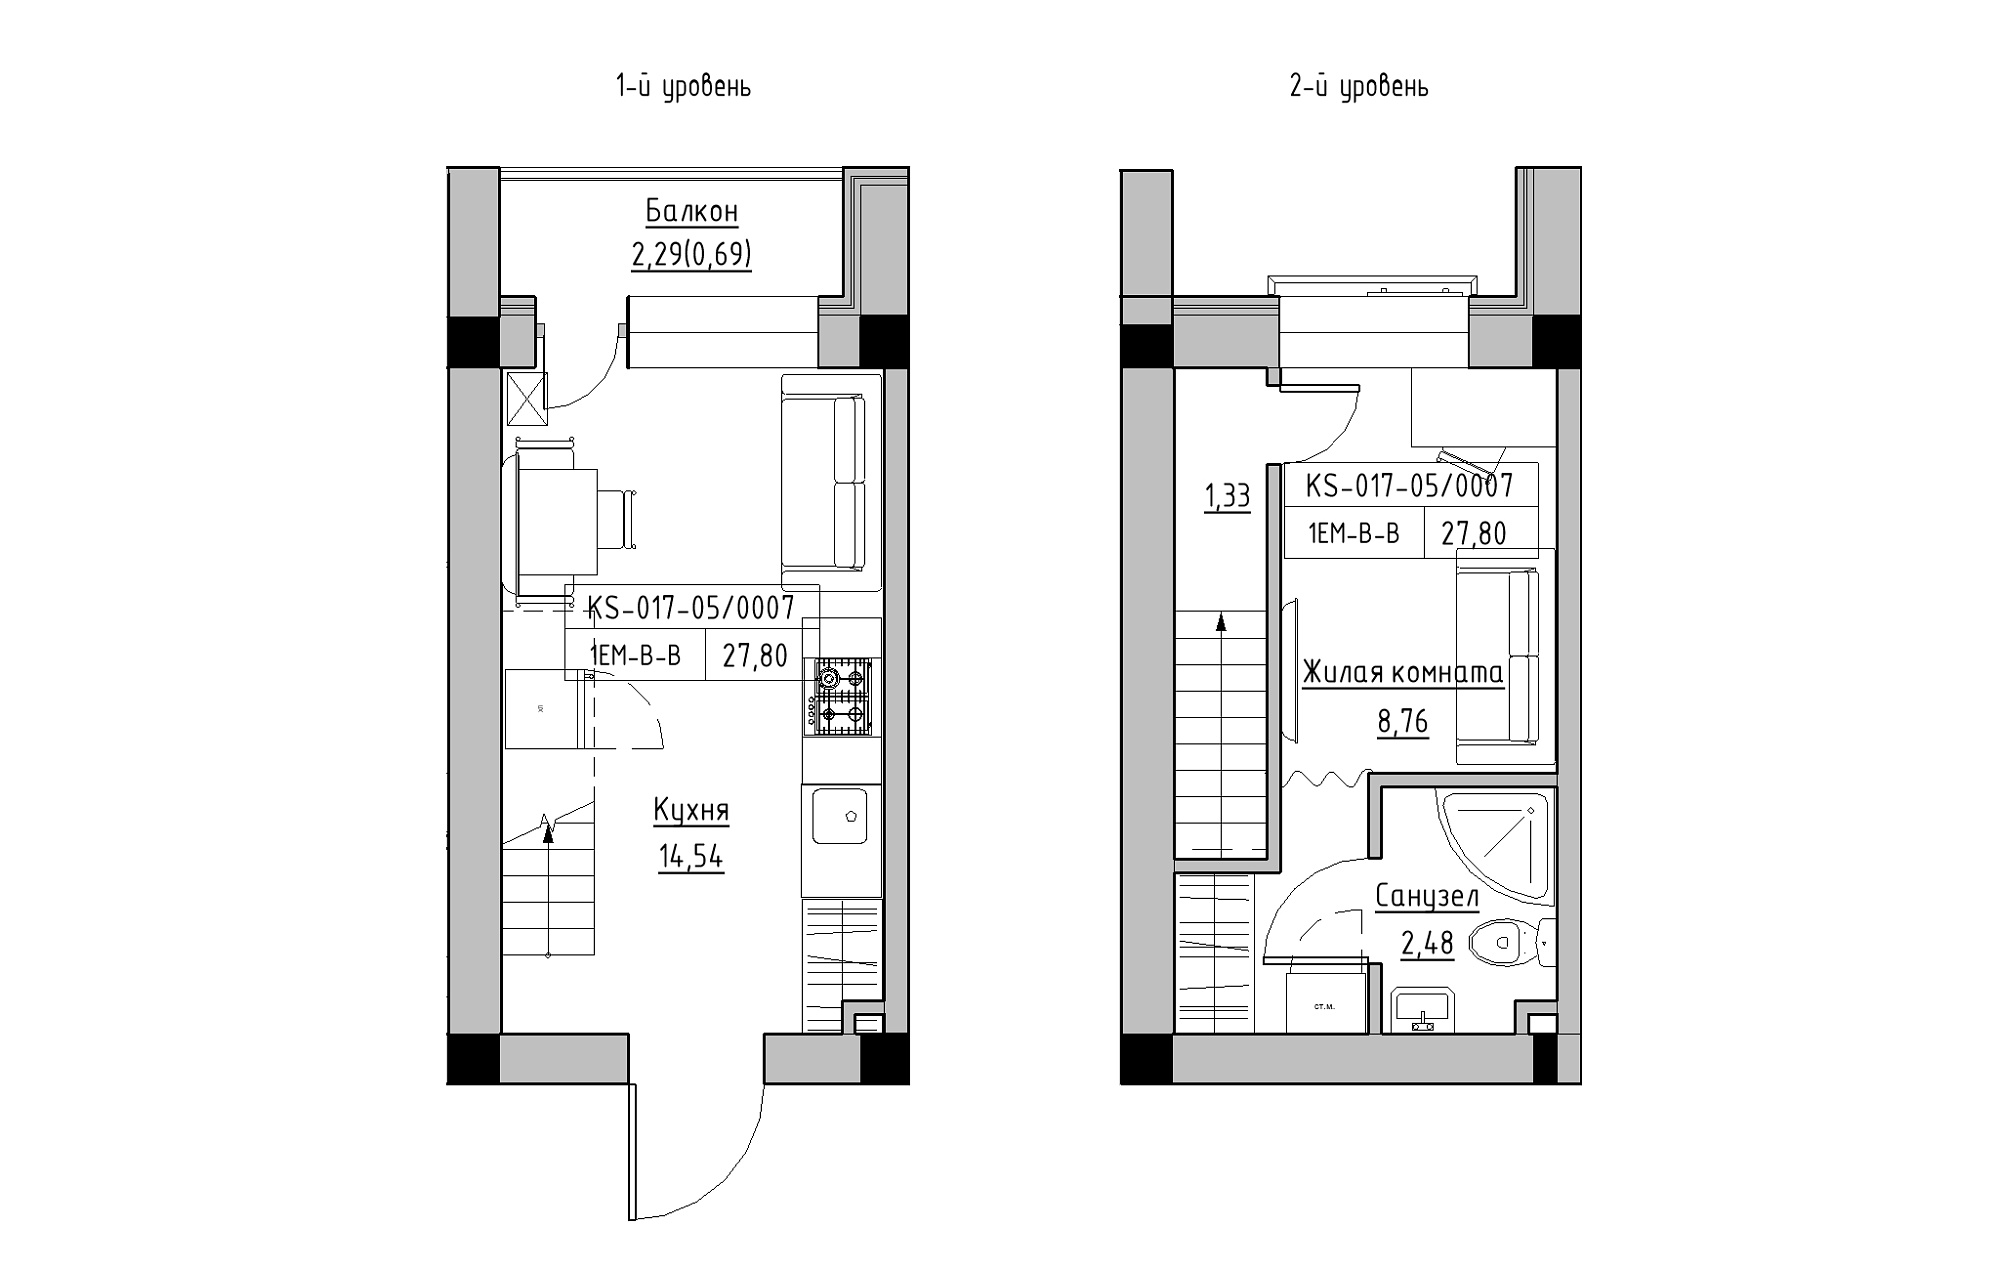 Planning 2-lvl flats area 27.8m2, KS-017-05/0007.